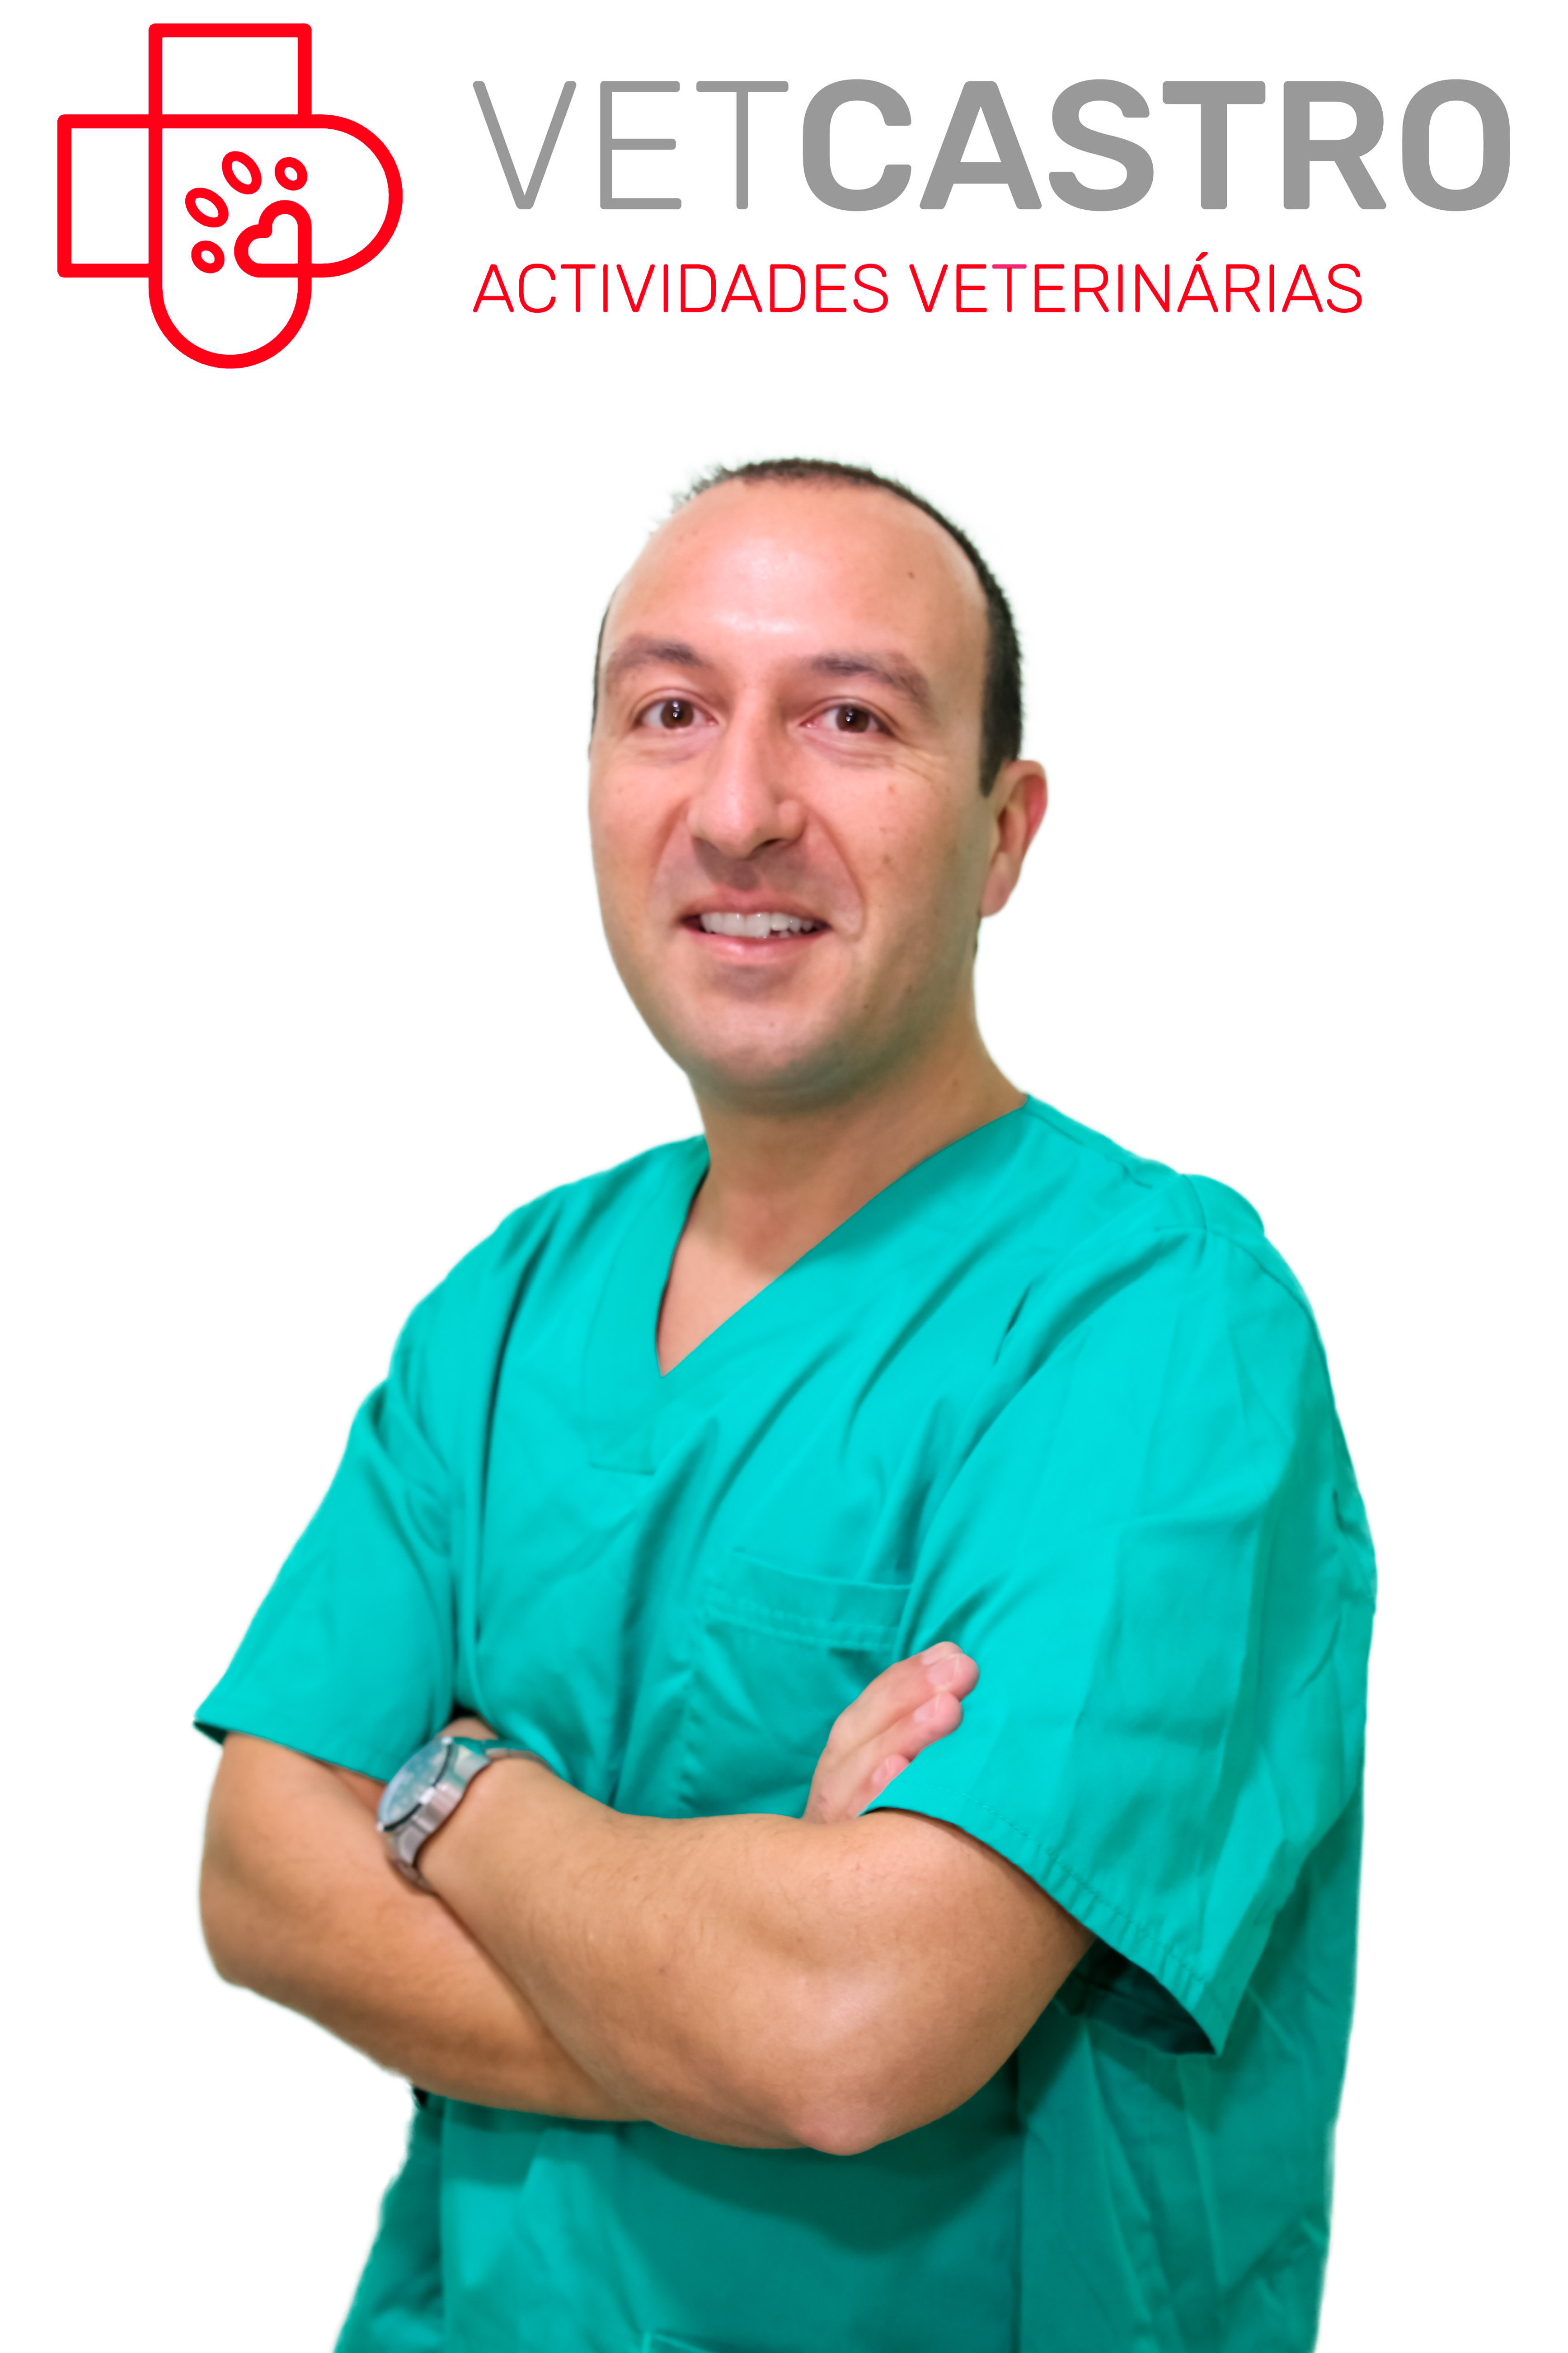 Dr. Vitor Castro